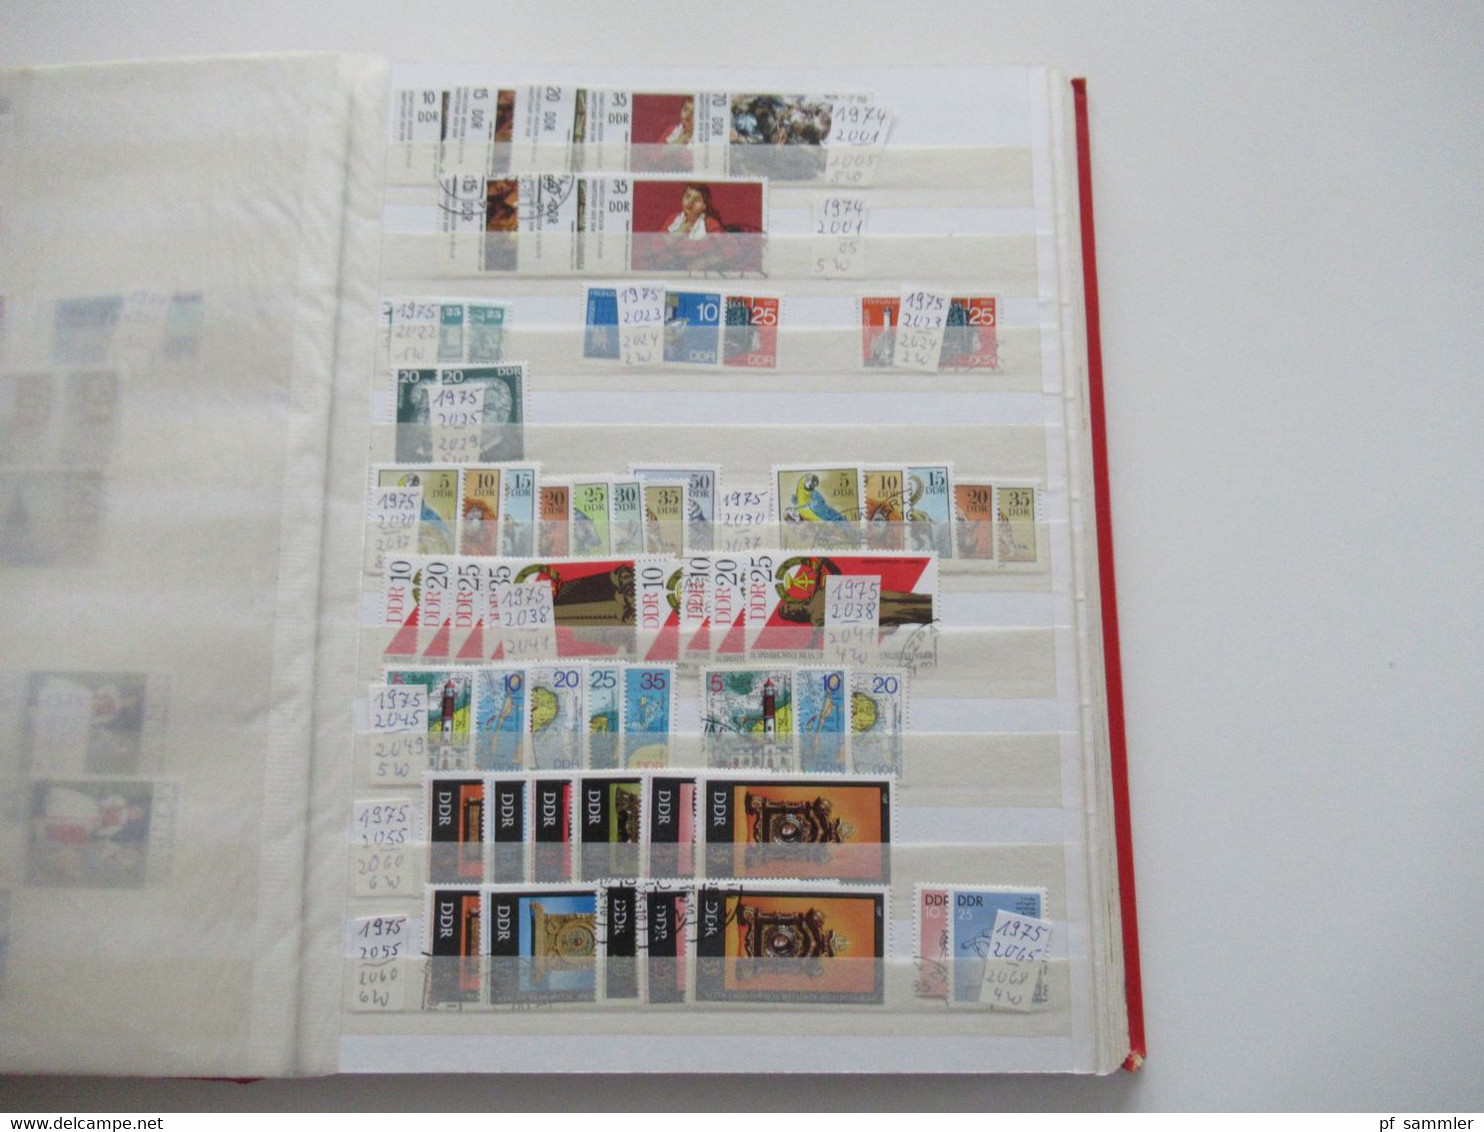 Steckbuch / Album DDR 1970 - 1979 größtenteils doppelt geführe Sammlung / postftisch und gestempelt. Stöberposten